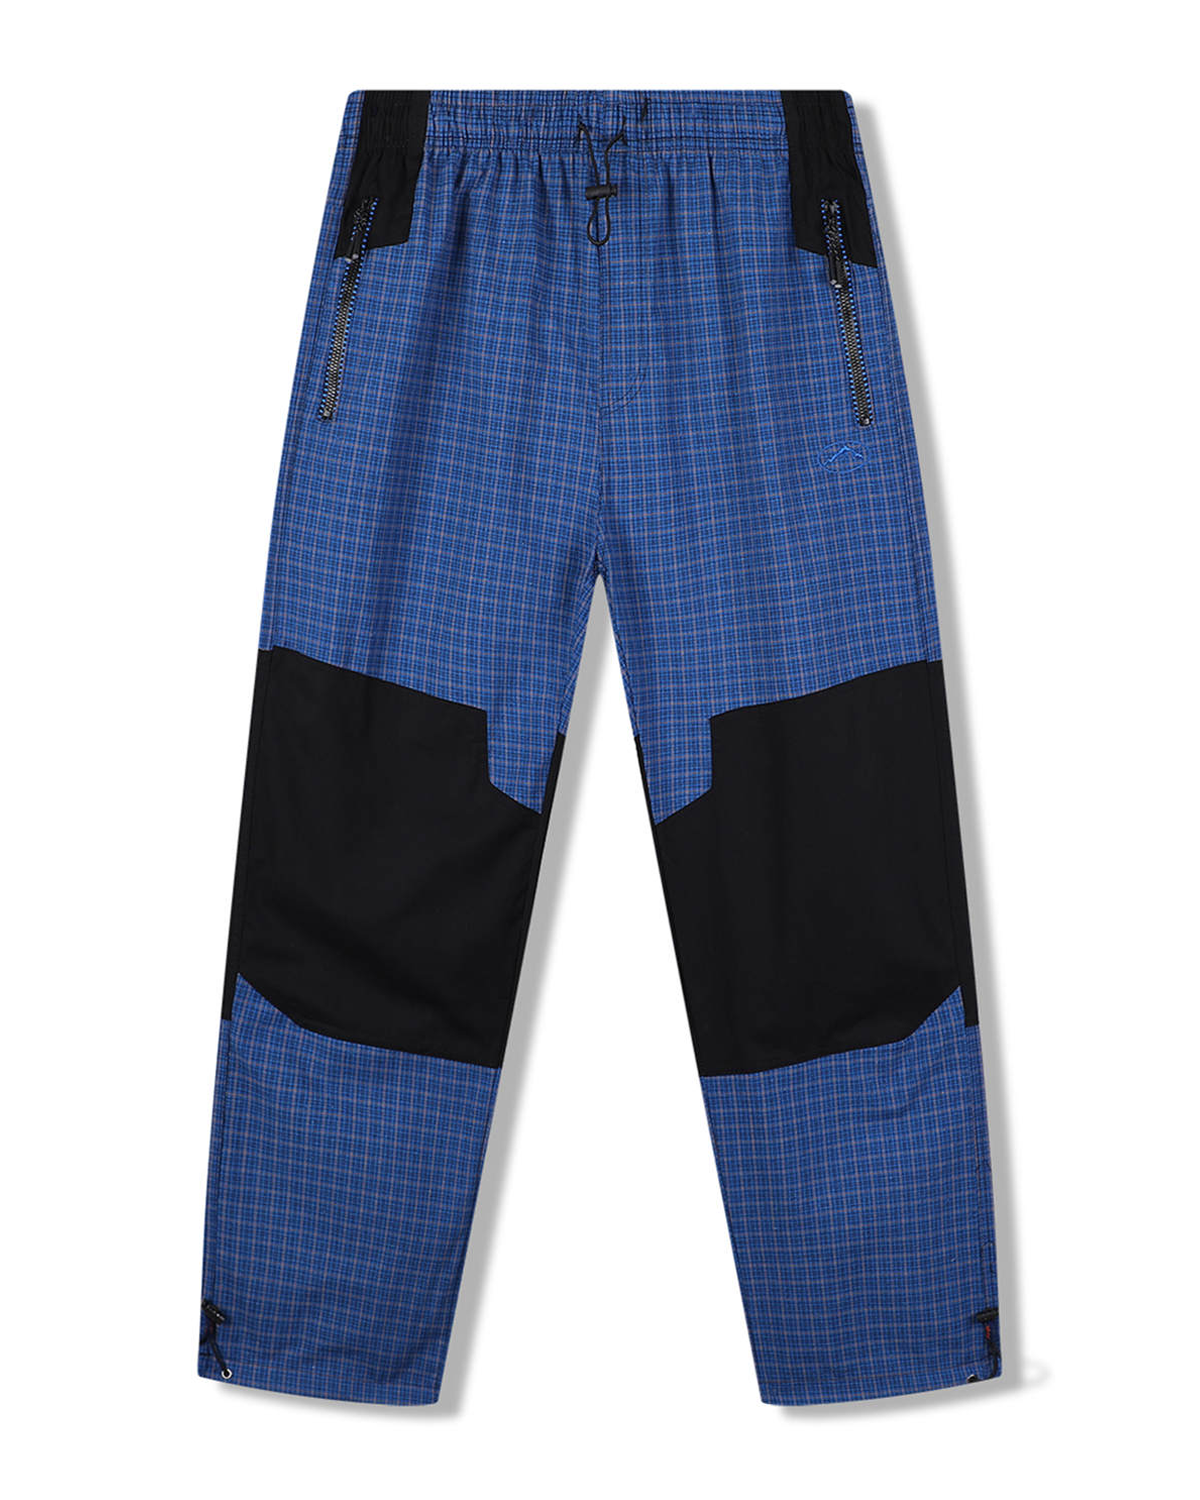 Pánské plátěné kalhoty - KUGO FK7611, modrá Barva: Modrá, Velikost: L